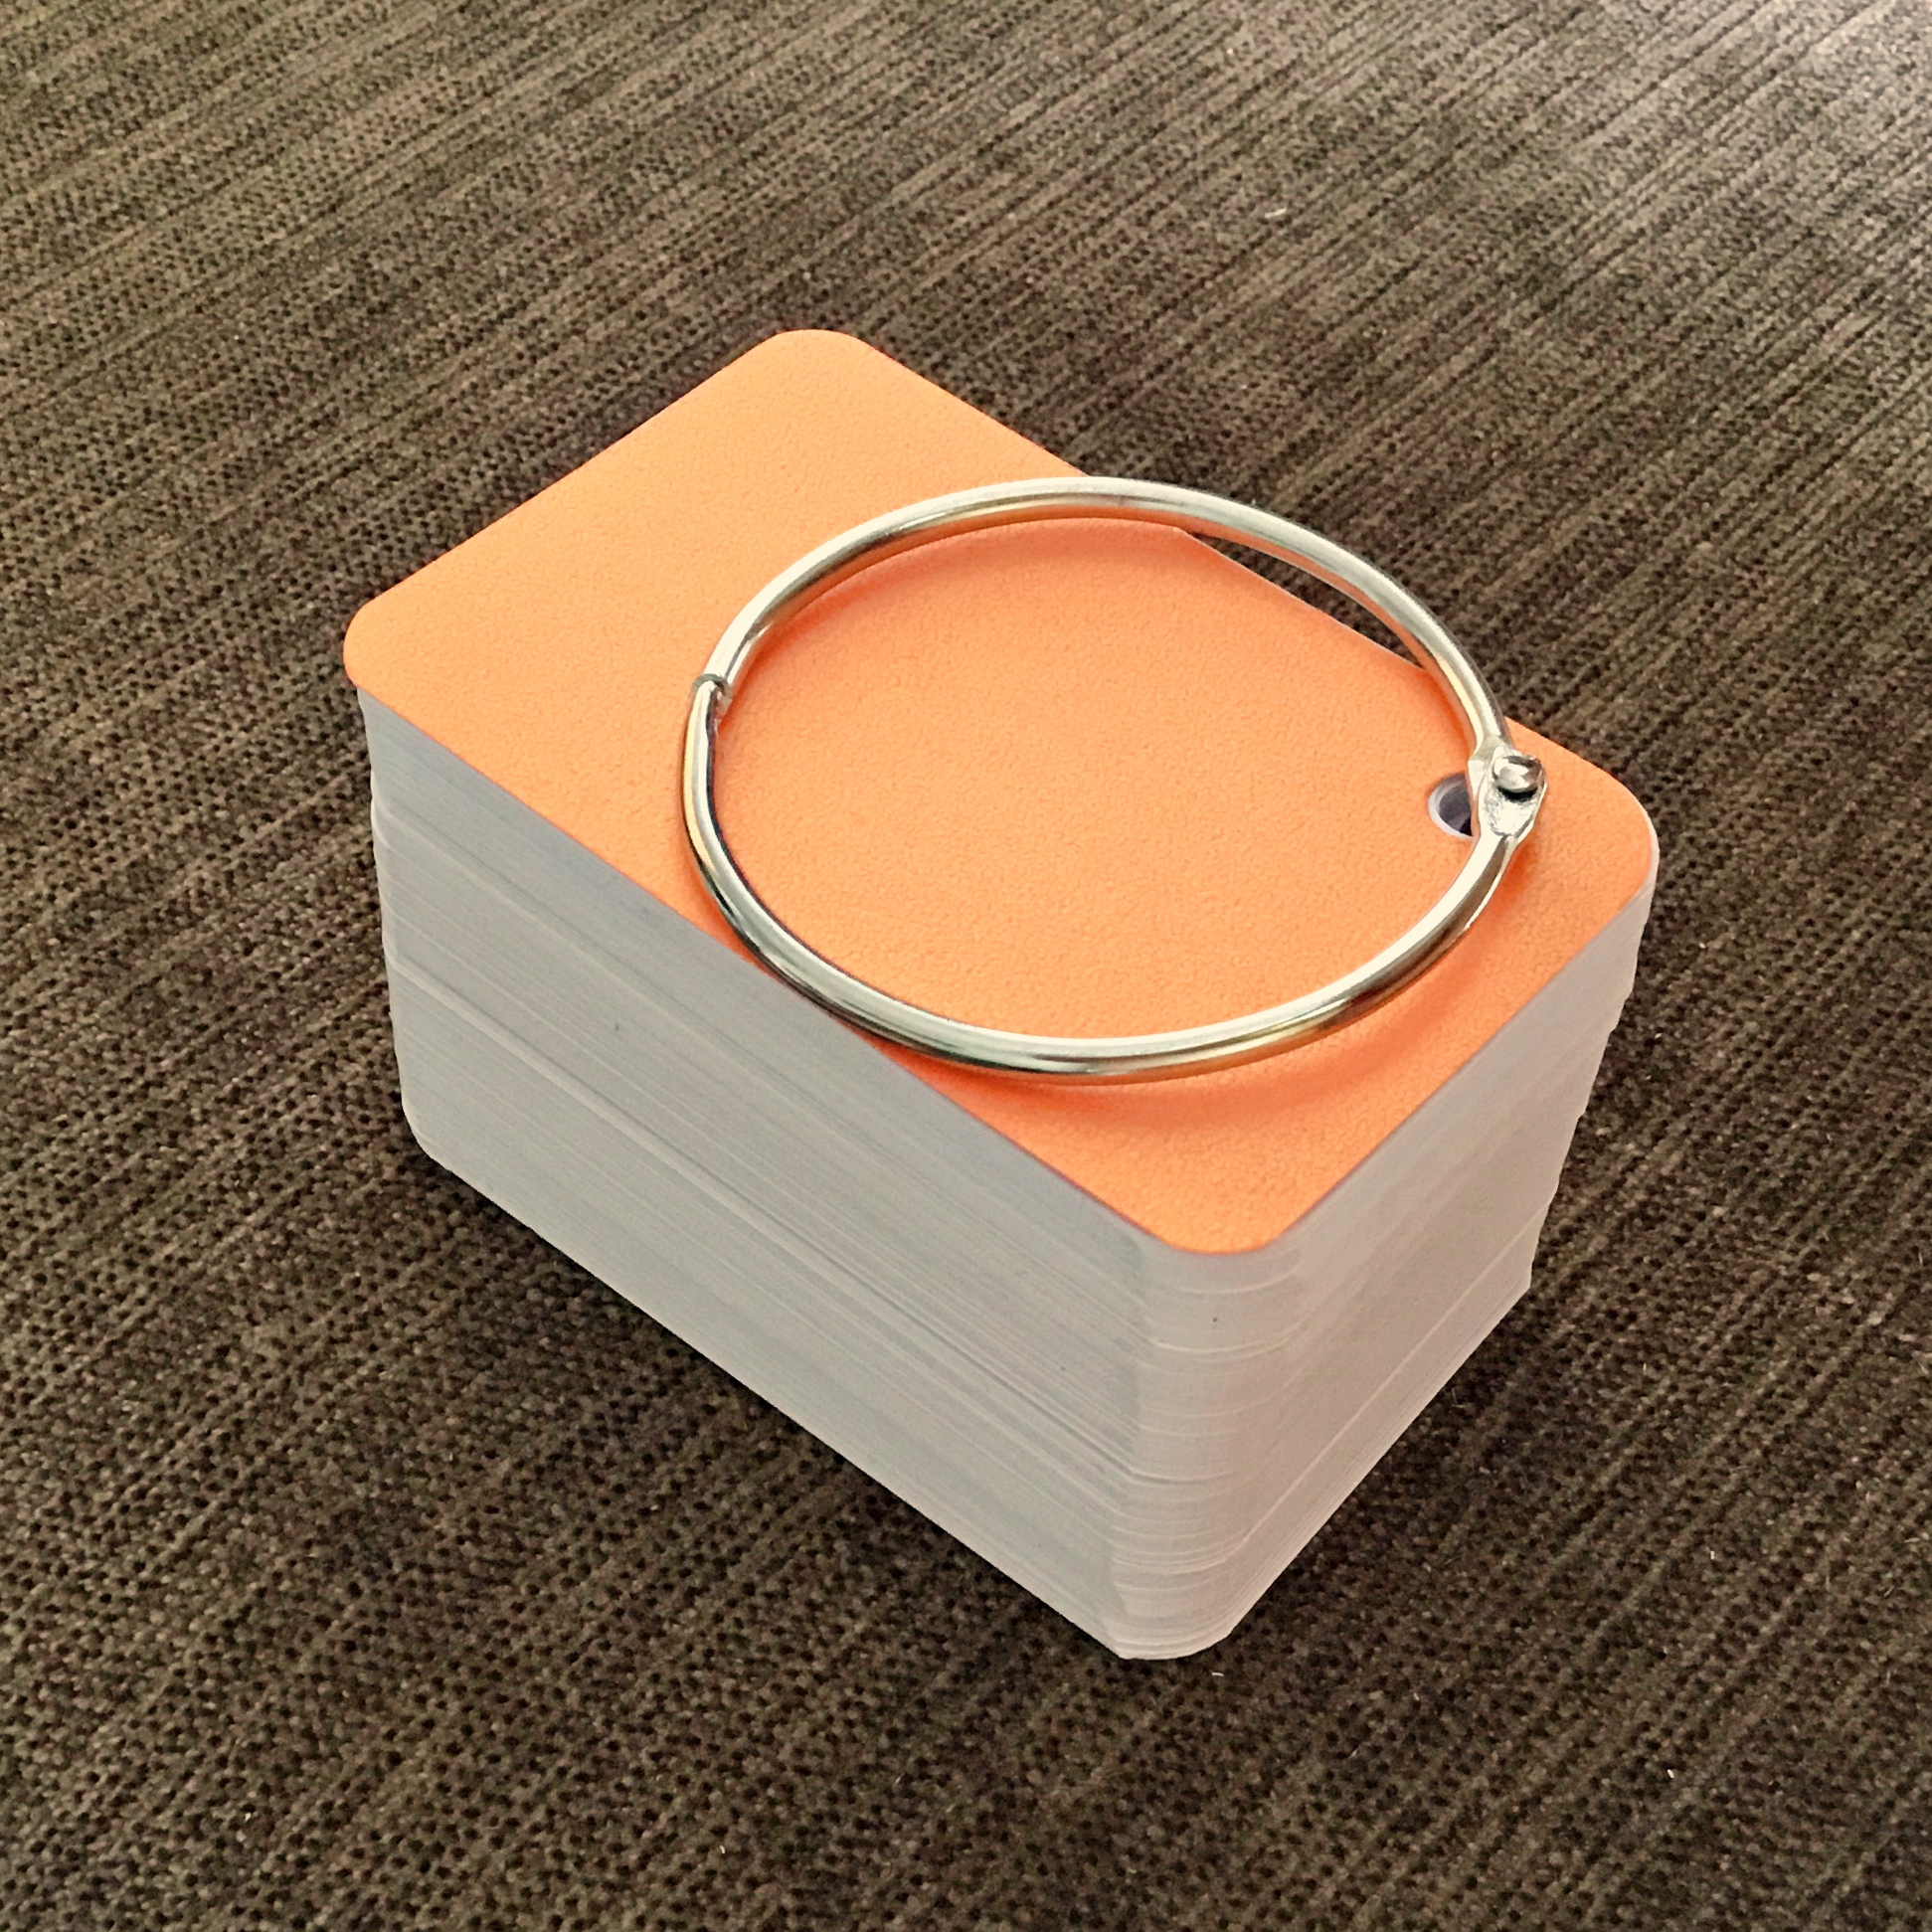 1000 thẻ flashcard trắng(TƯƠNG ỨNG 10 XẤP FLASHCARD MỖI XẤP 100 THẺ) siêu dày4x7 bo góc tặng khoen + bìa cứng 3D